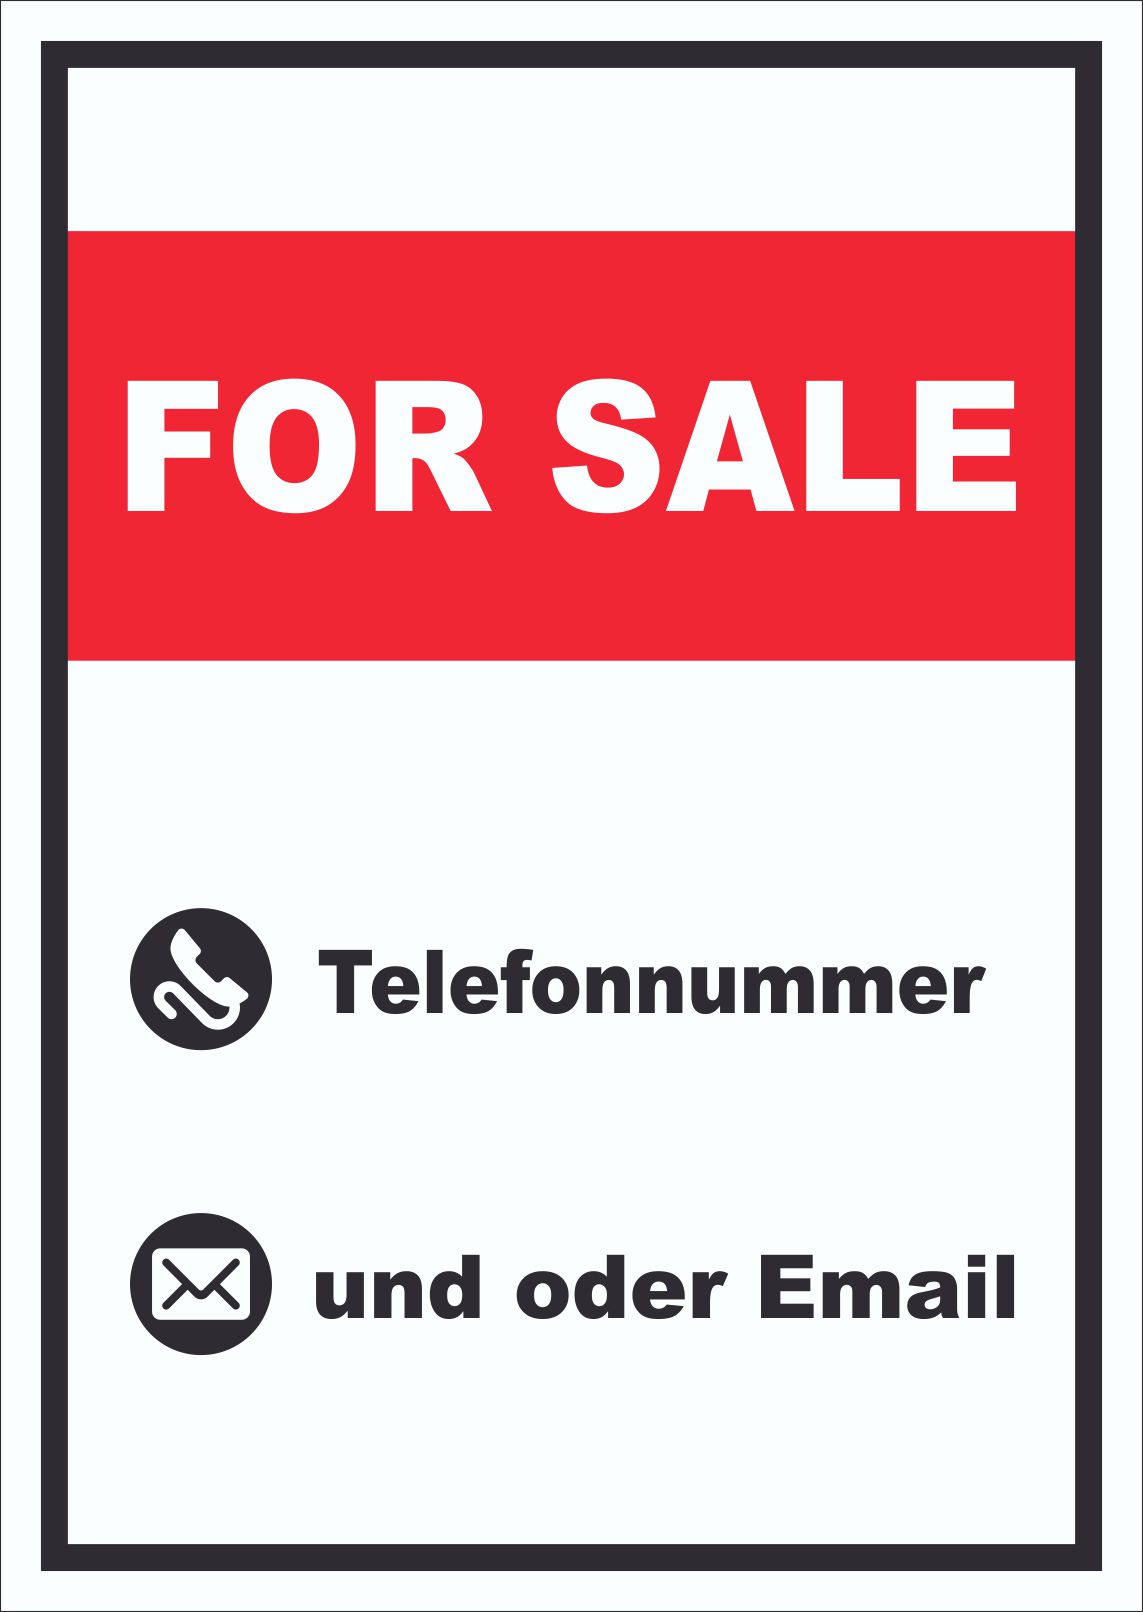 For Sale Schild mit Wunschtext hochkant  HB-Druck Schilder, Textildruck & Stickerei  Onlineshop